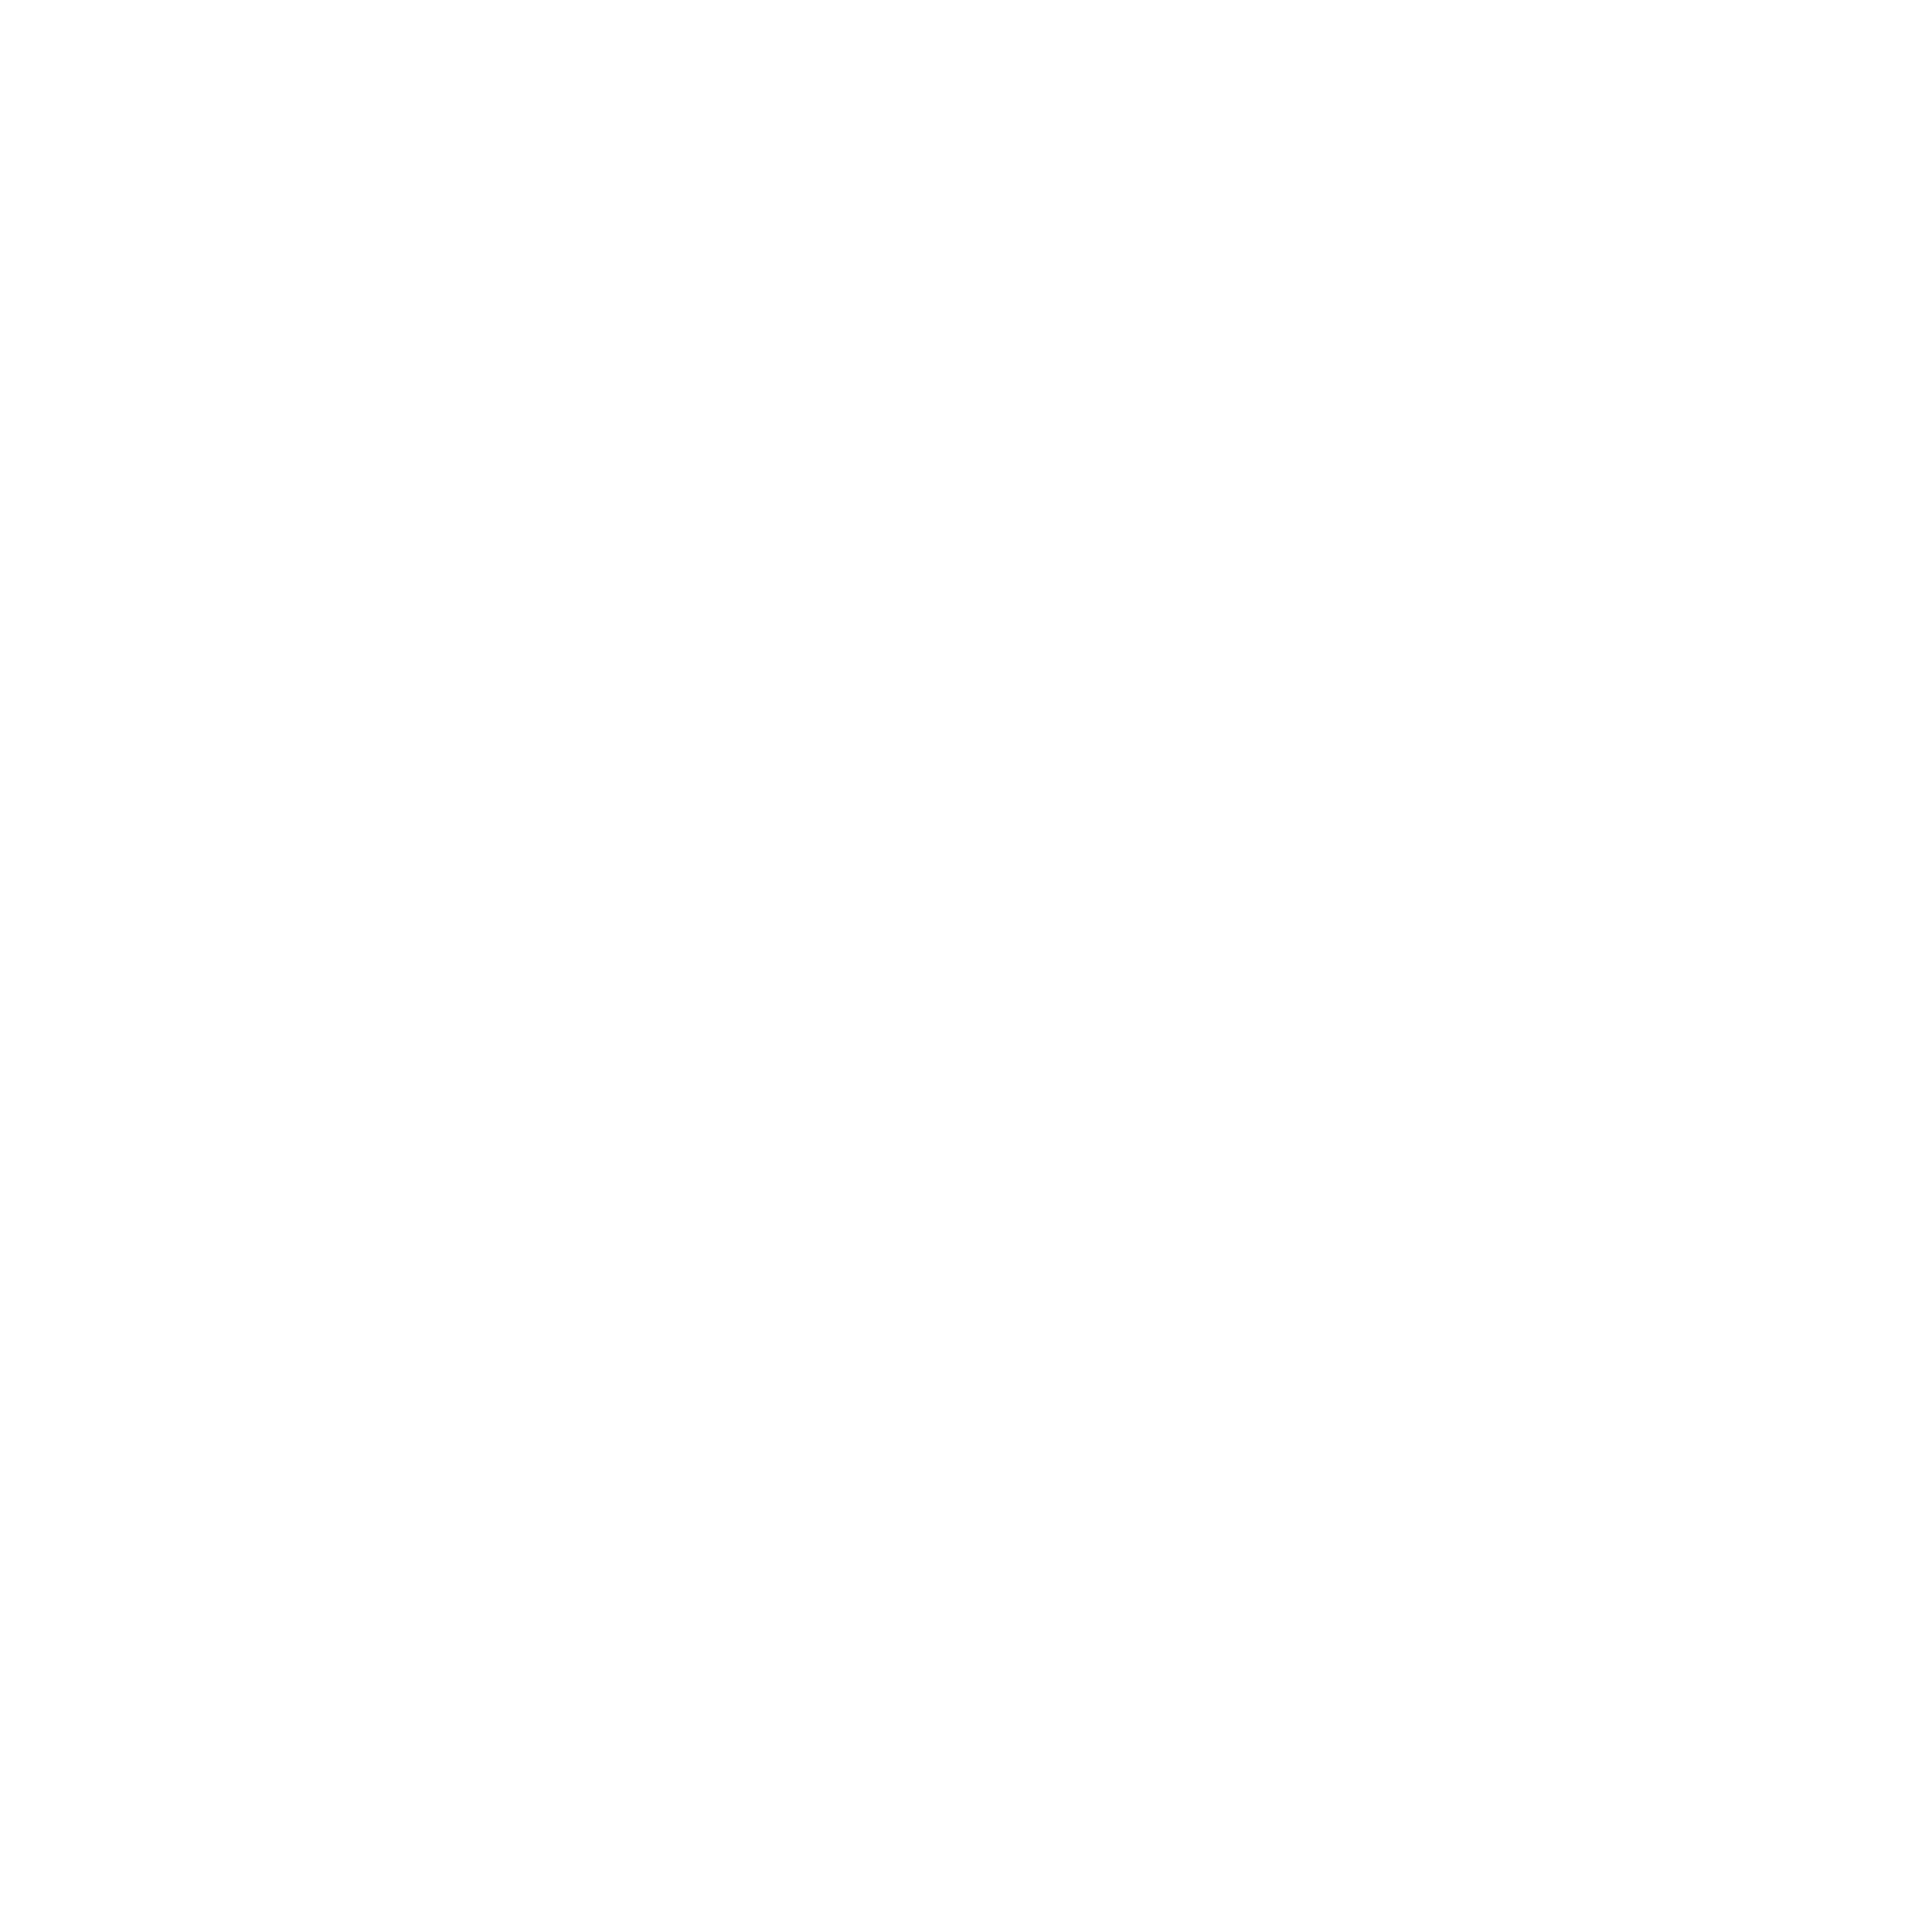 BPM-0124-Retail-WHT_Shout Factory